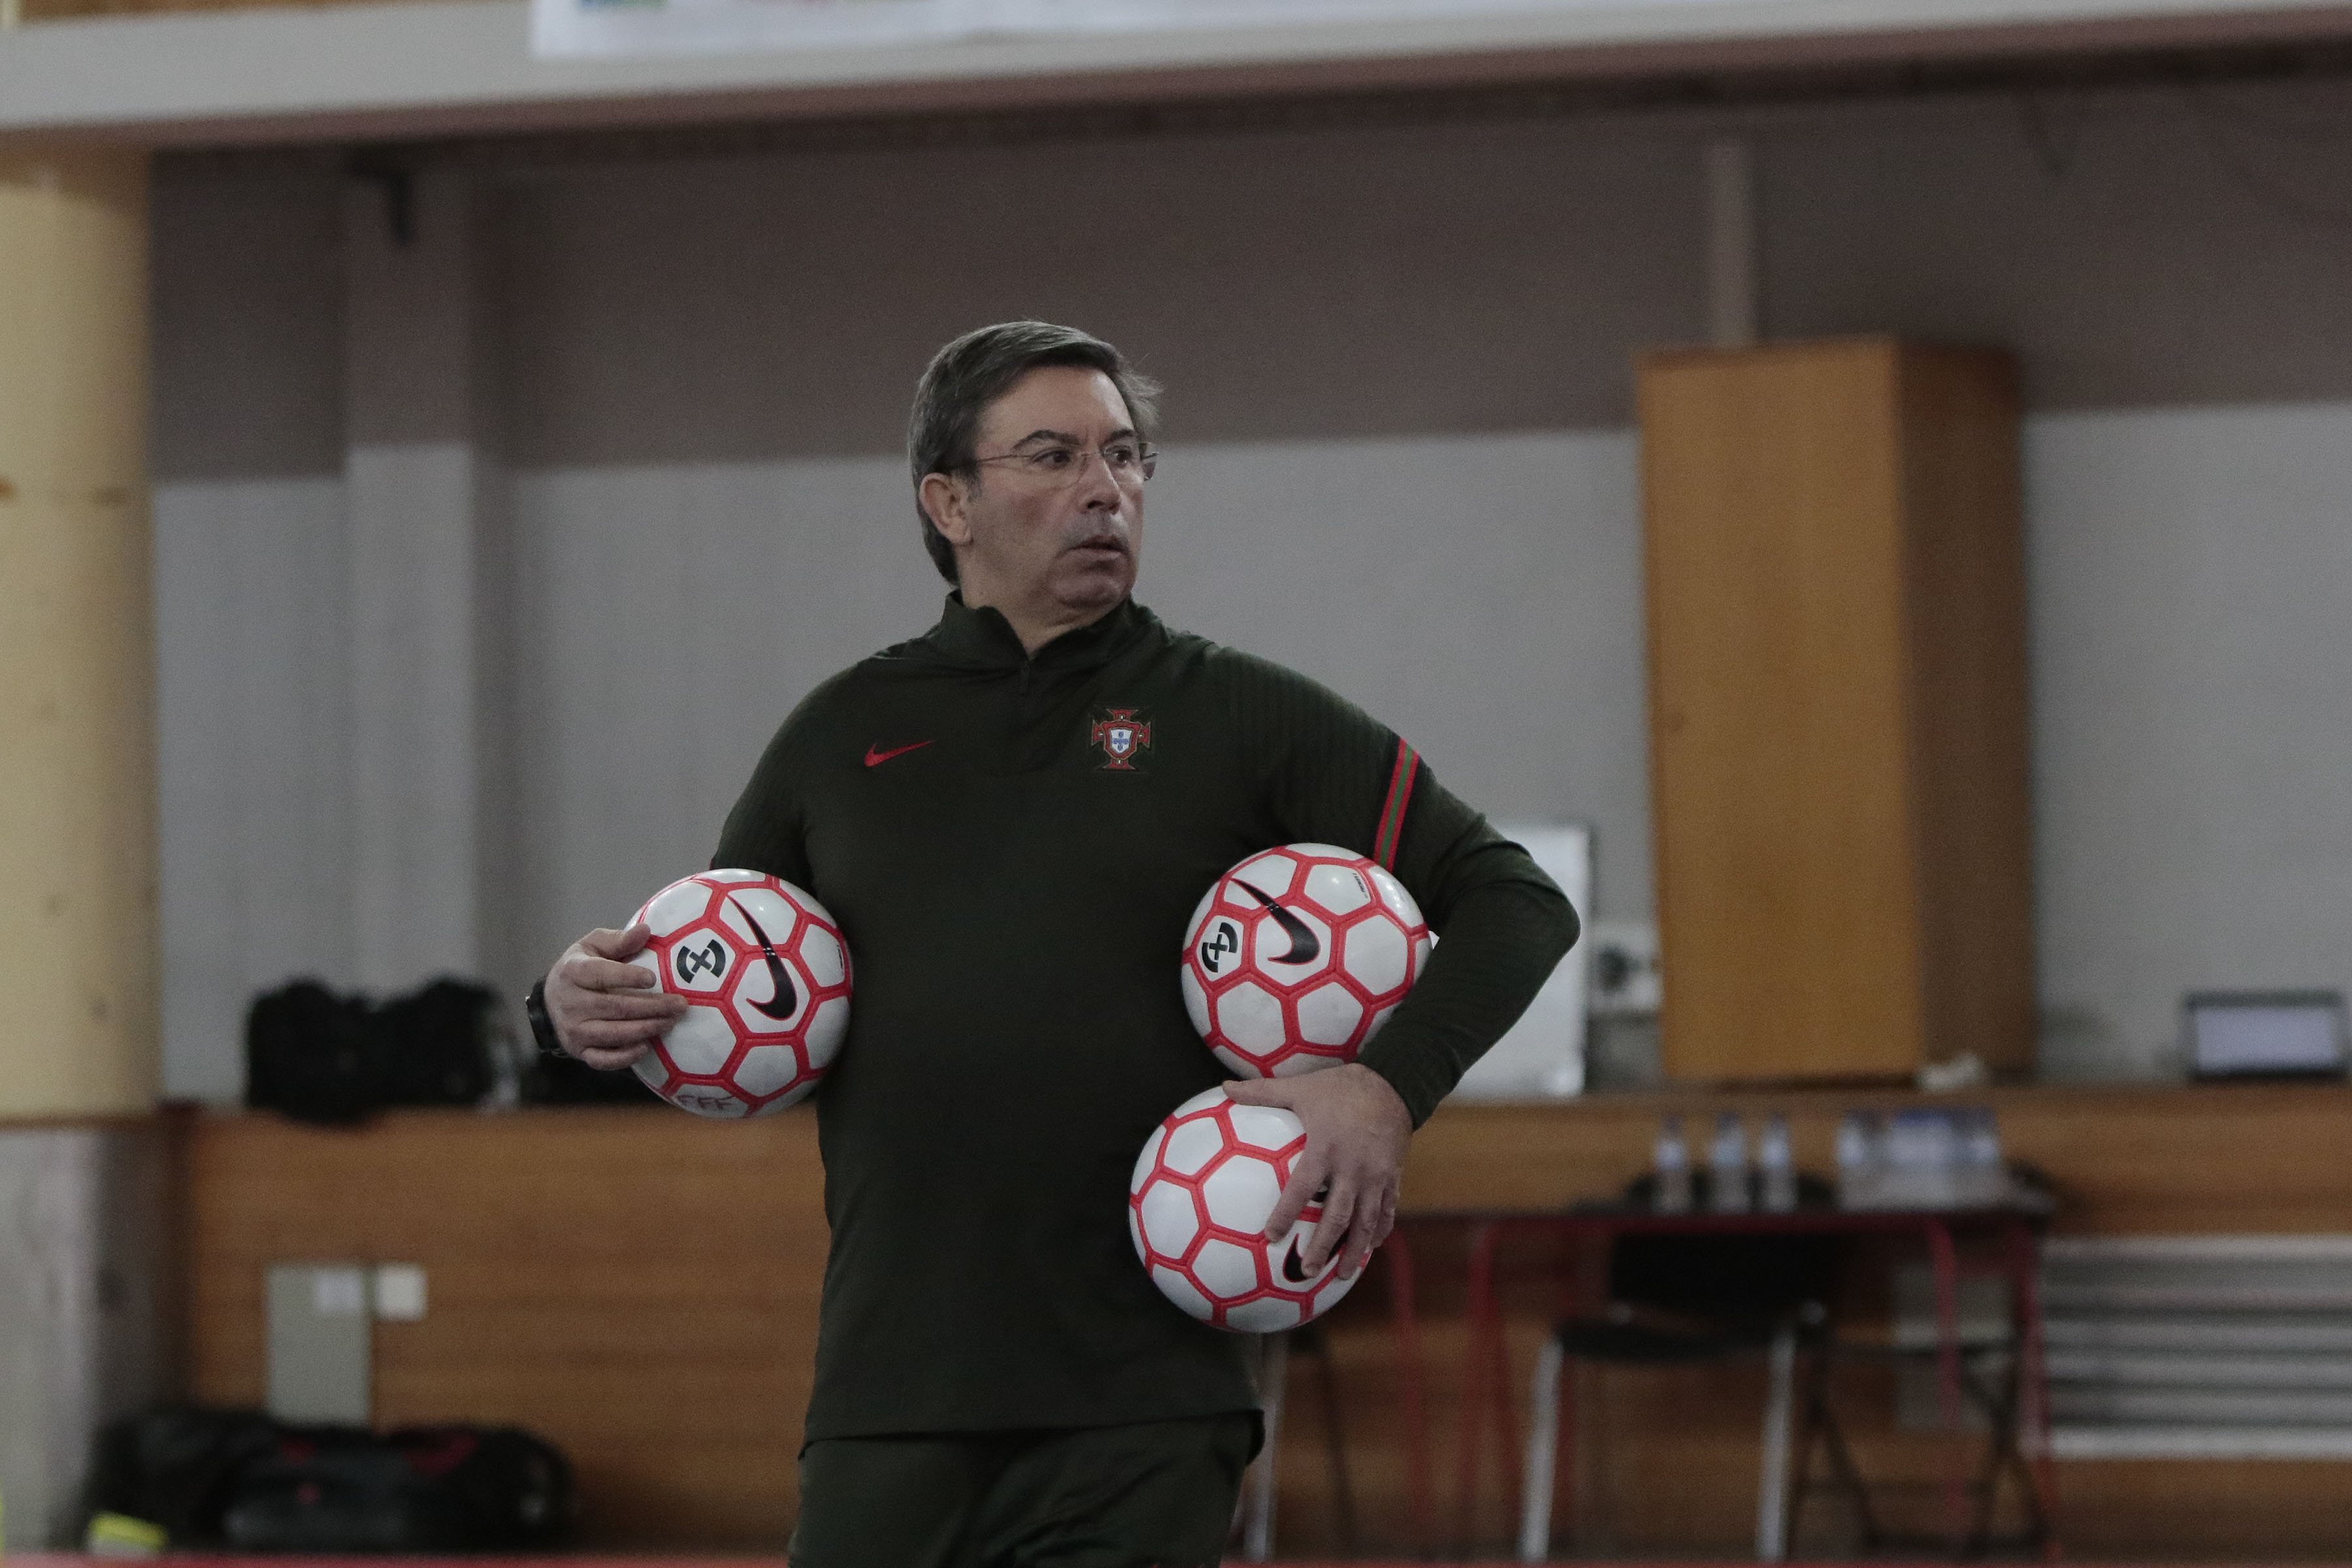 Município de Sines / Futsal: Jogos de preparação Portugal x Eslovénia